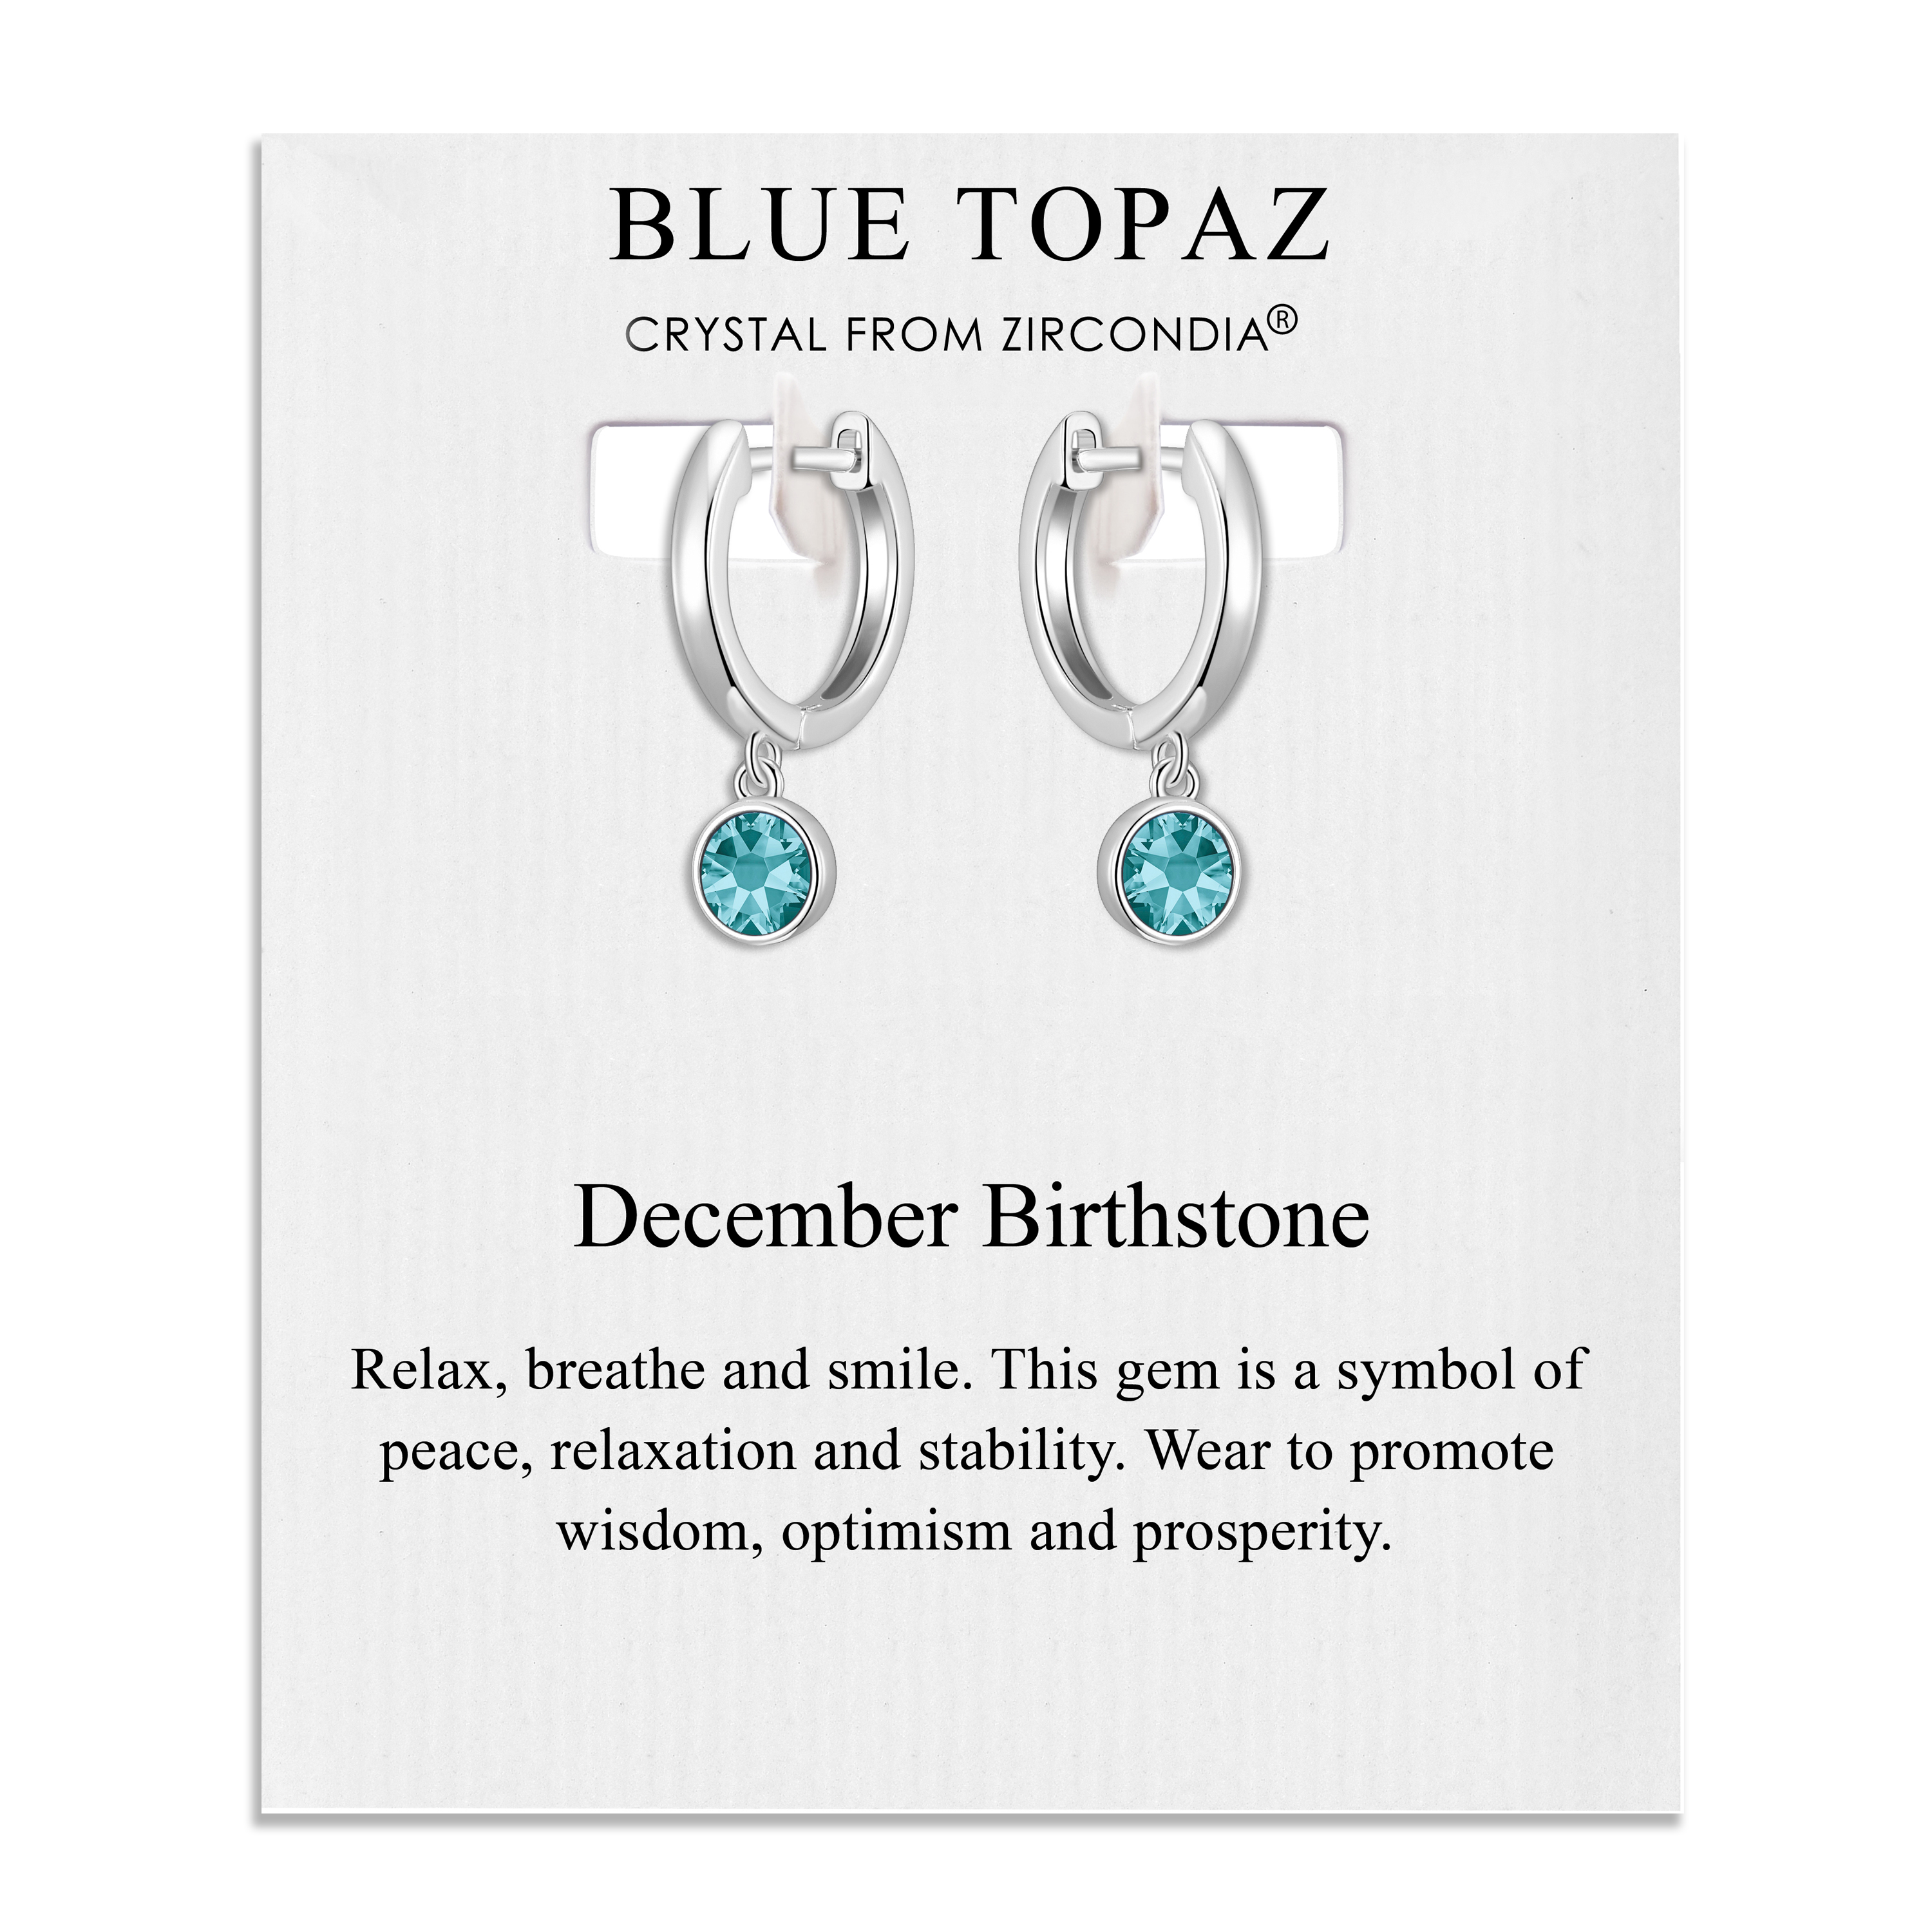 December Birthstone Hoop Earrings Created with Blue Topaz Zircondia® Crystals by Philip Jones Jewellery